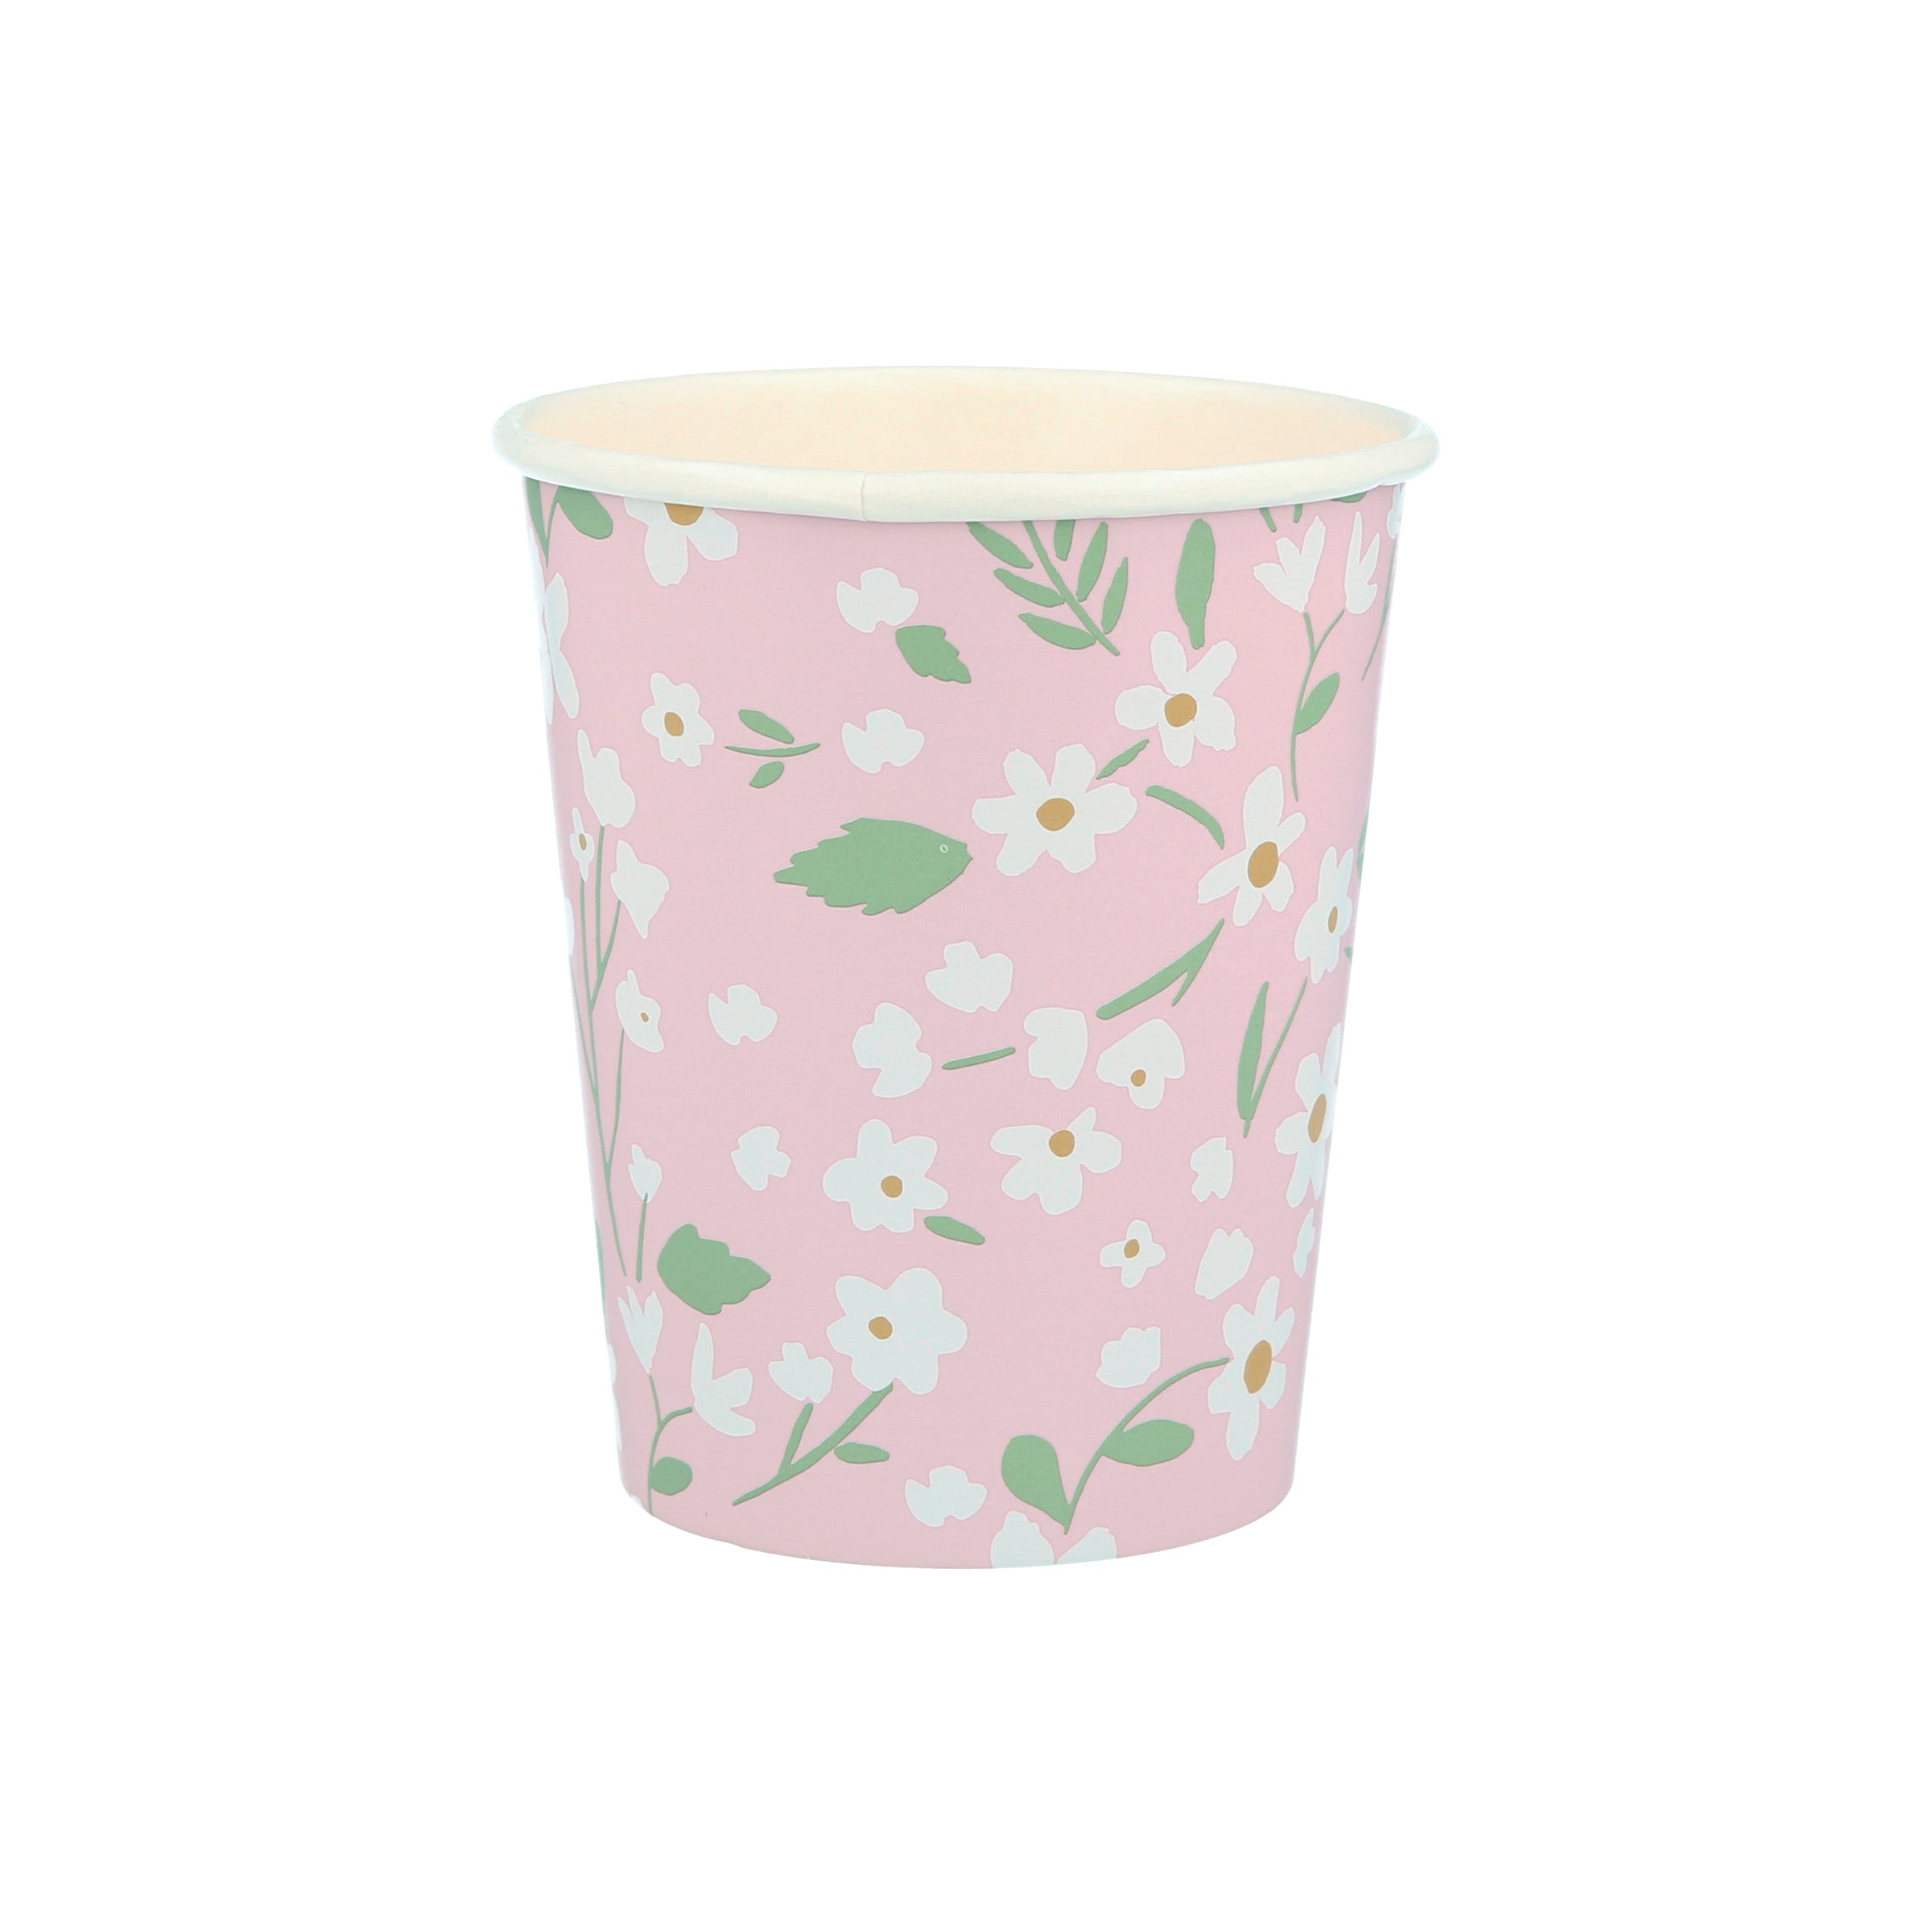 MeriMeri Ditsy Floral Cups in pink